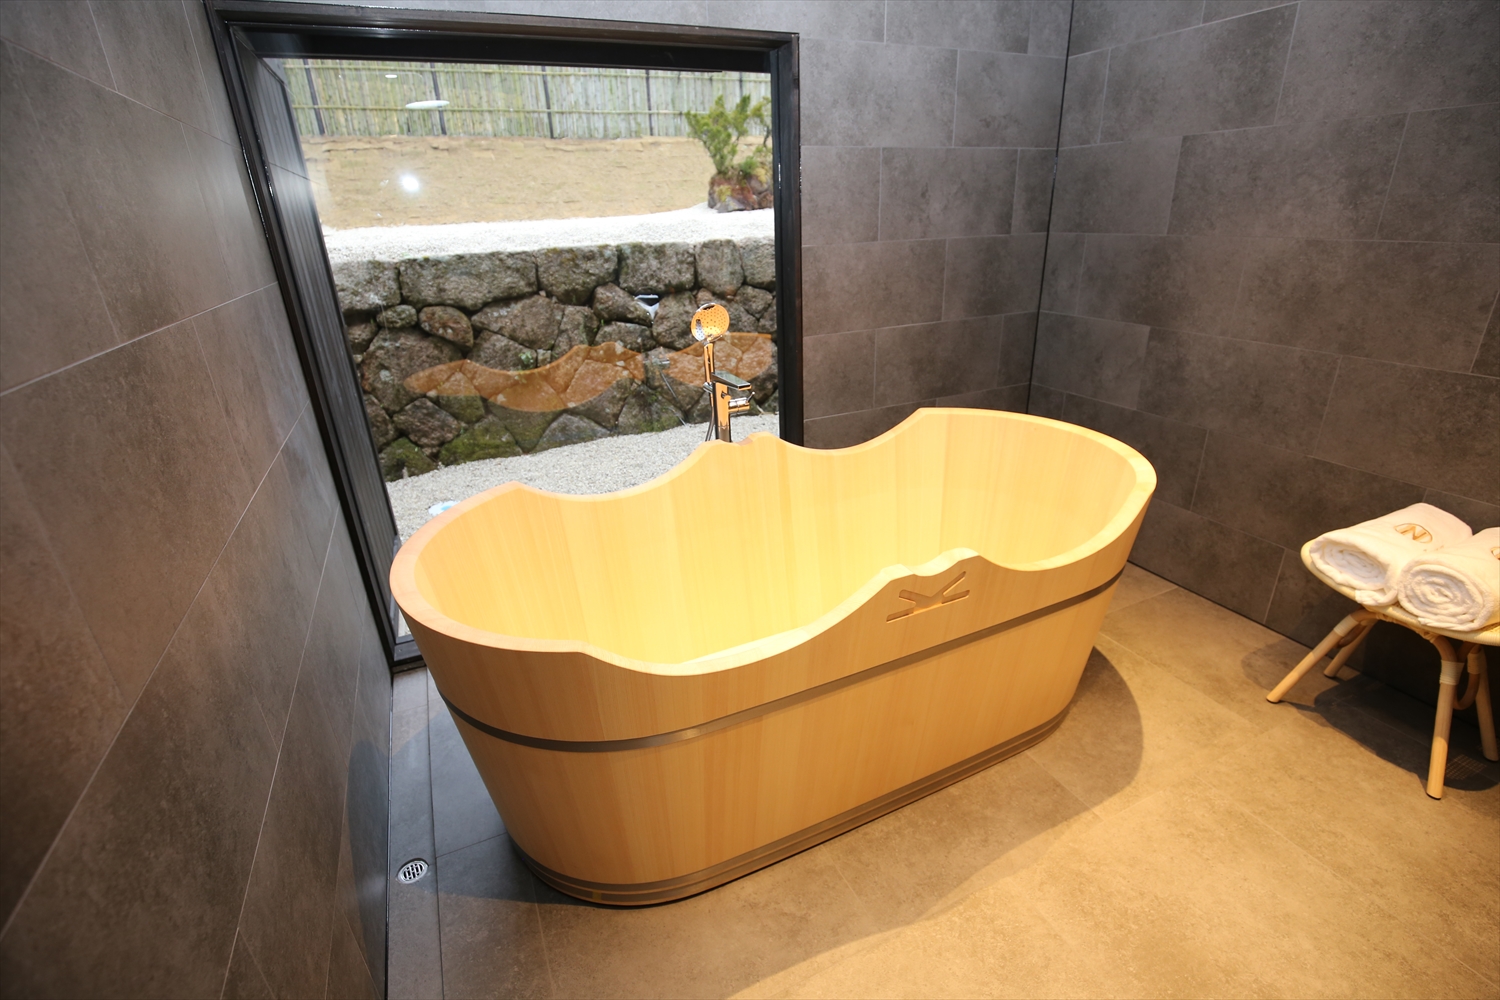 新築、リフォームには日本産の「檜風呂」、「木風呂」を導入しませんか